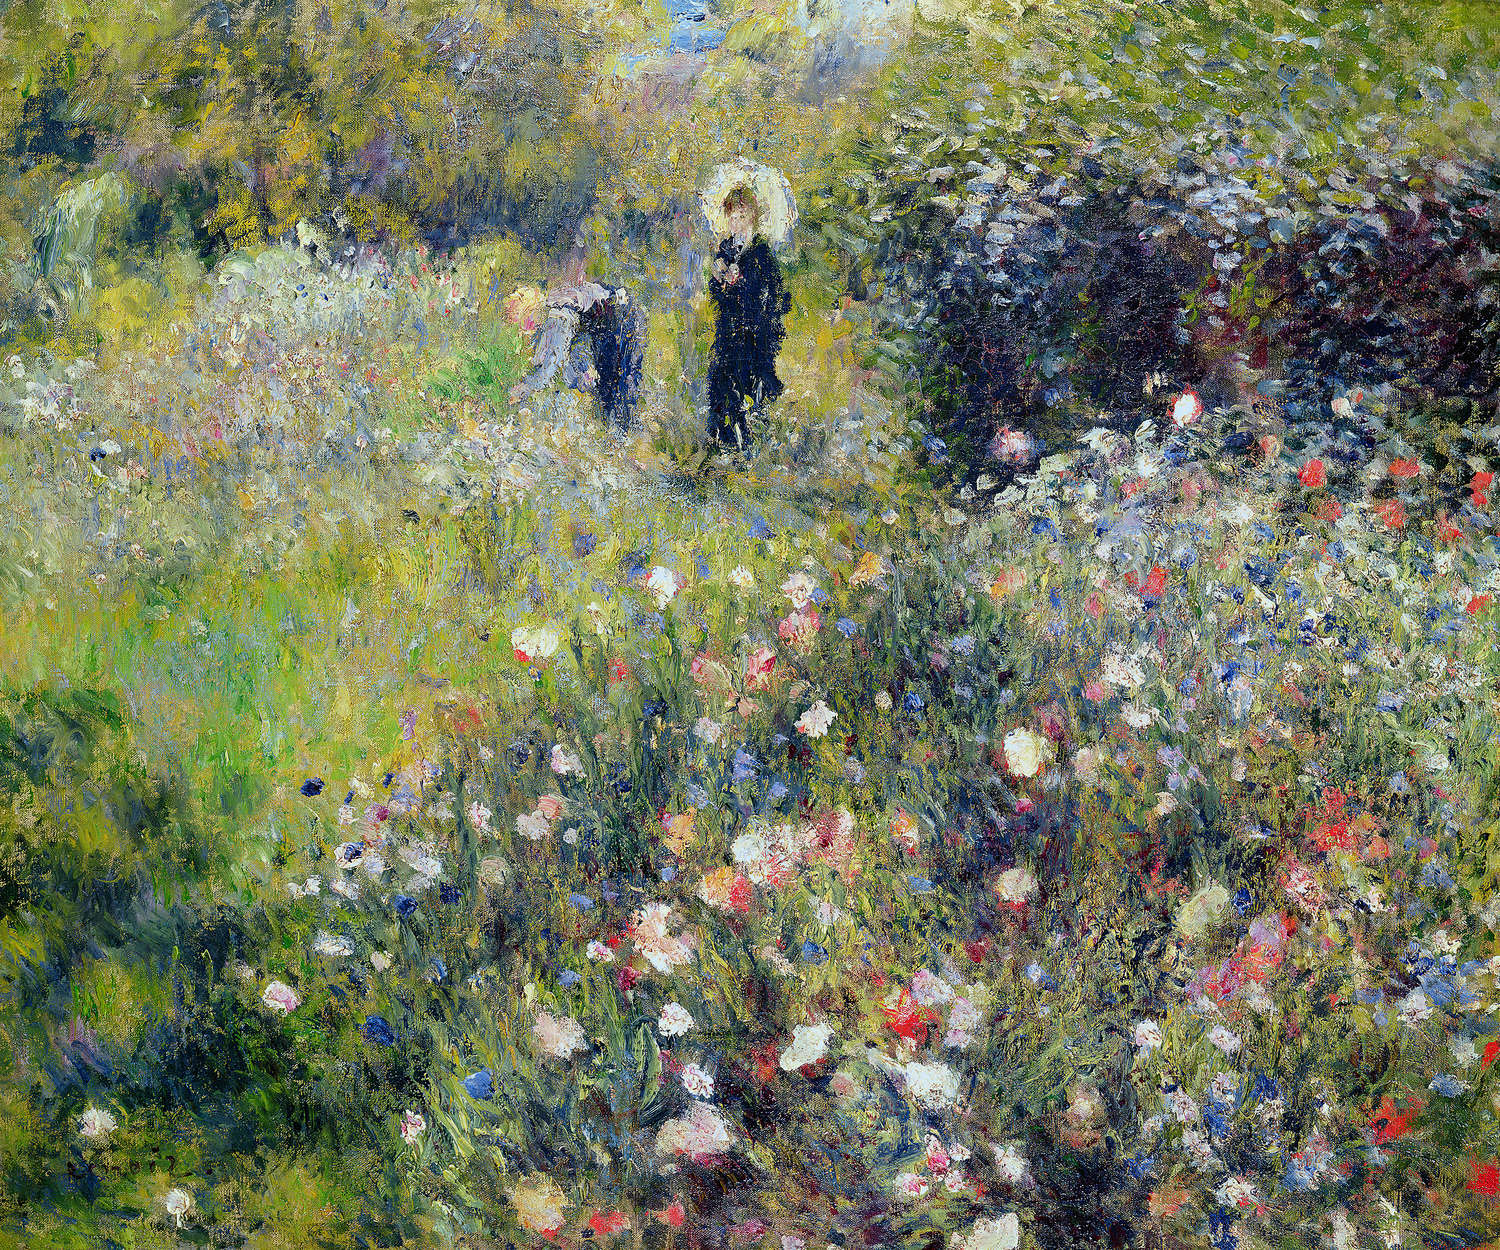             Fototapete "Frau mit Sonnenschirm in einem Garten" von Pierre Auguste Renoir
        